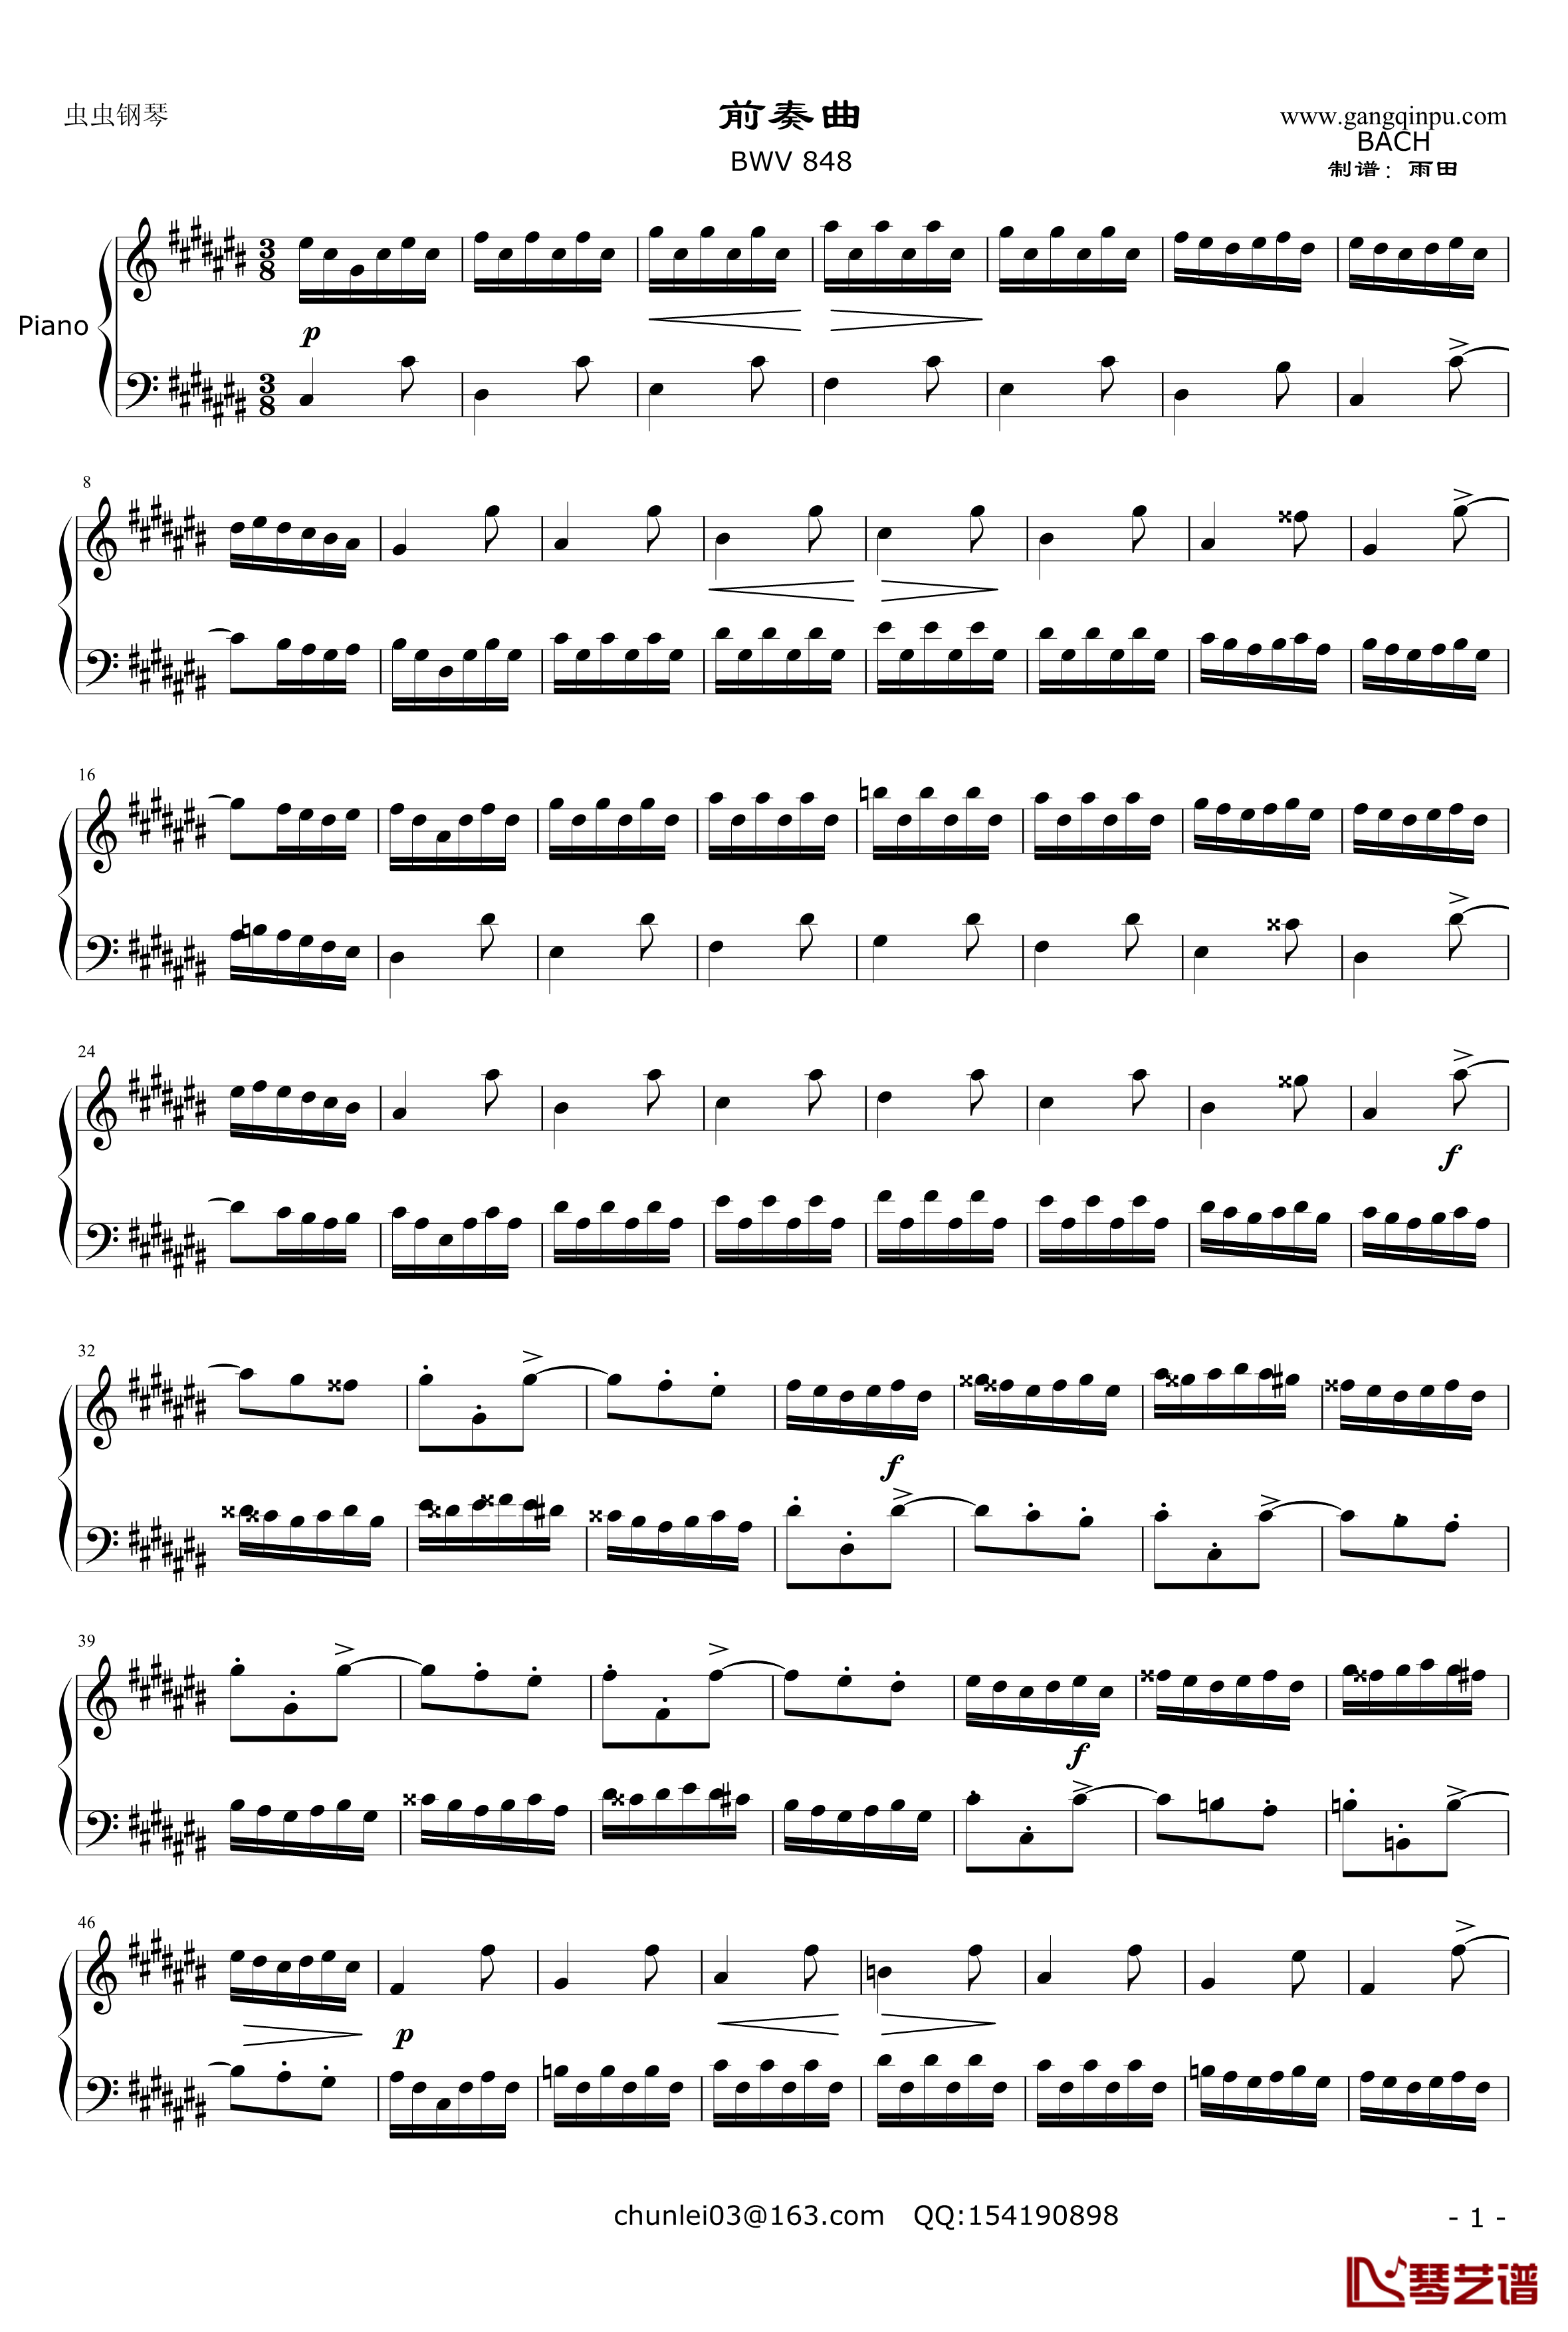 前奏曲-平均律第3首钢琴谱-奥芬巴赫-BWV8481